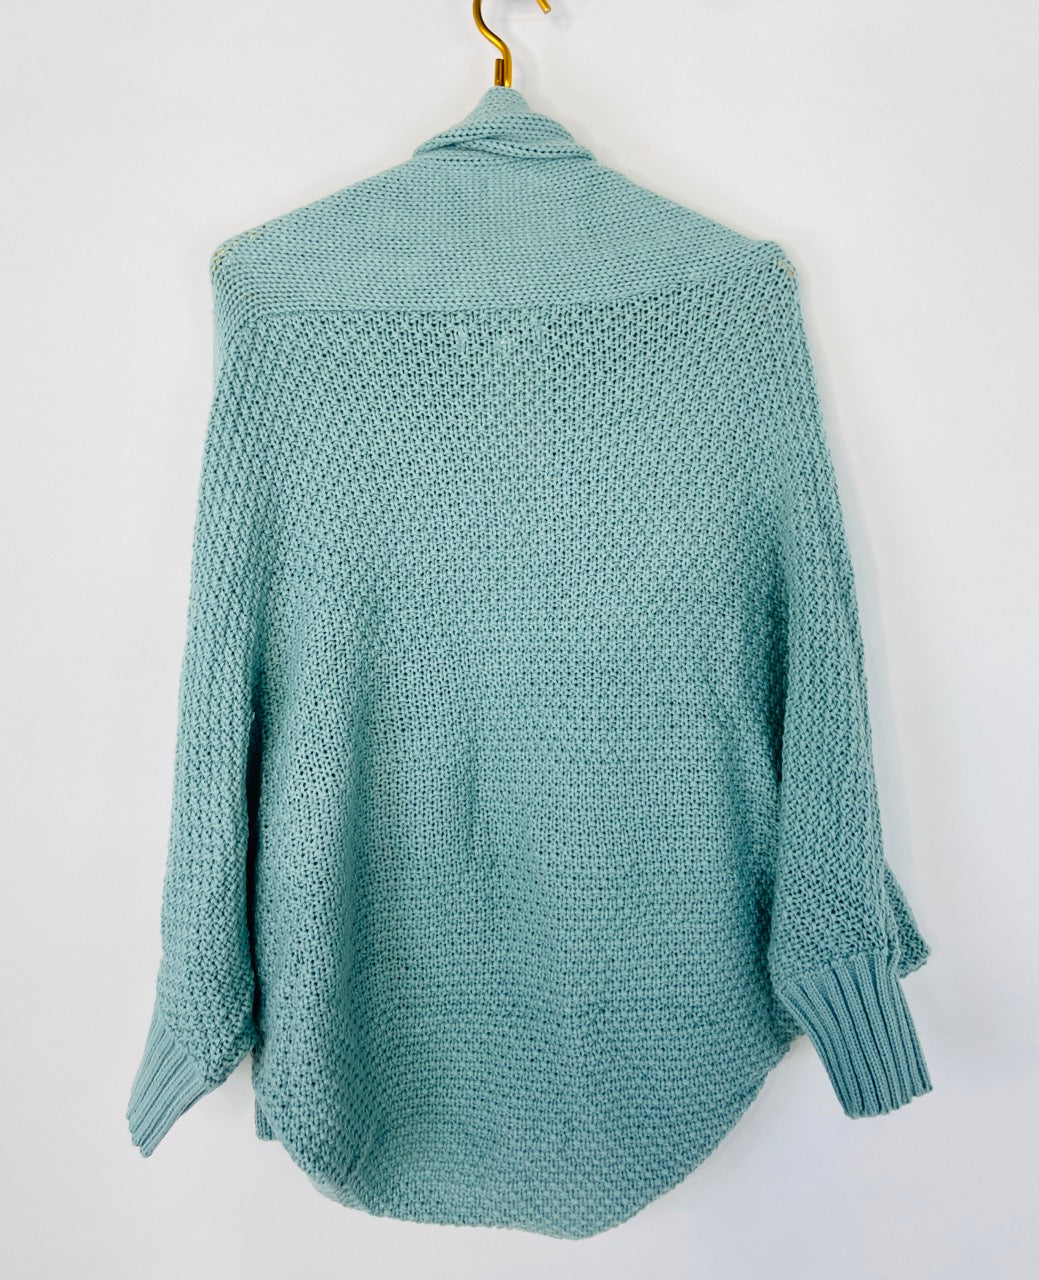 Sea Foam Green Cardigan Sweater- S